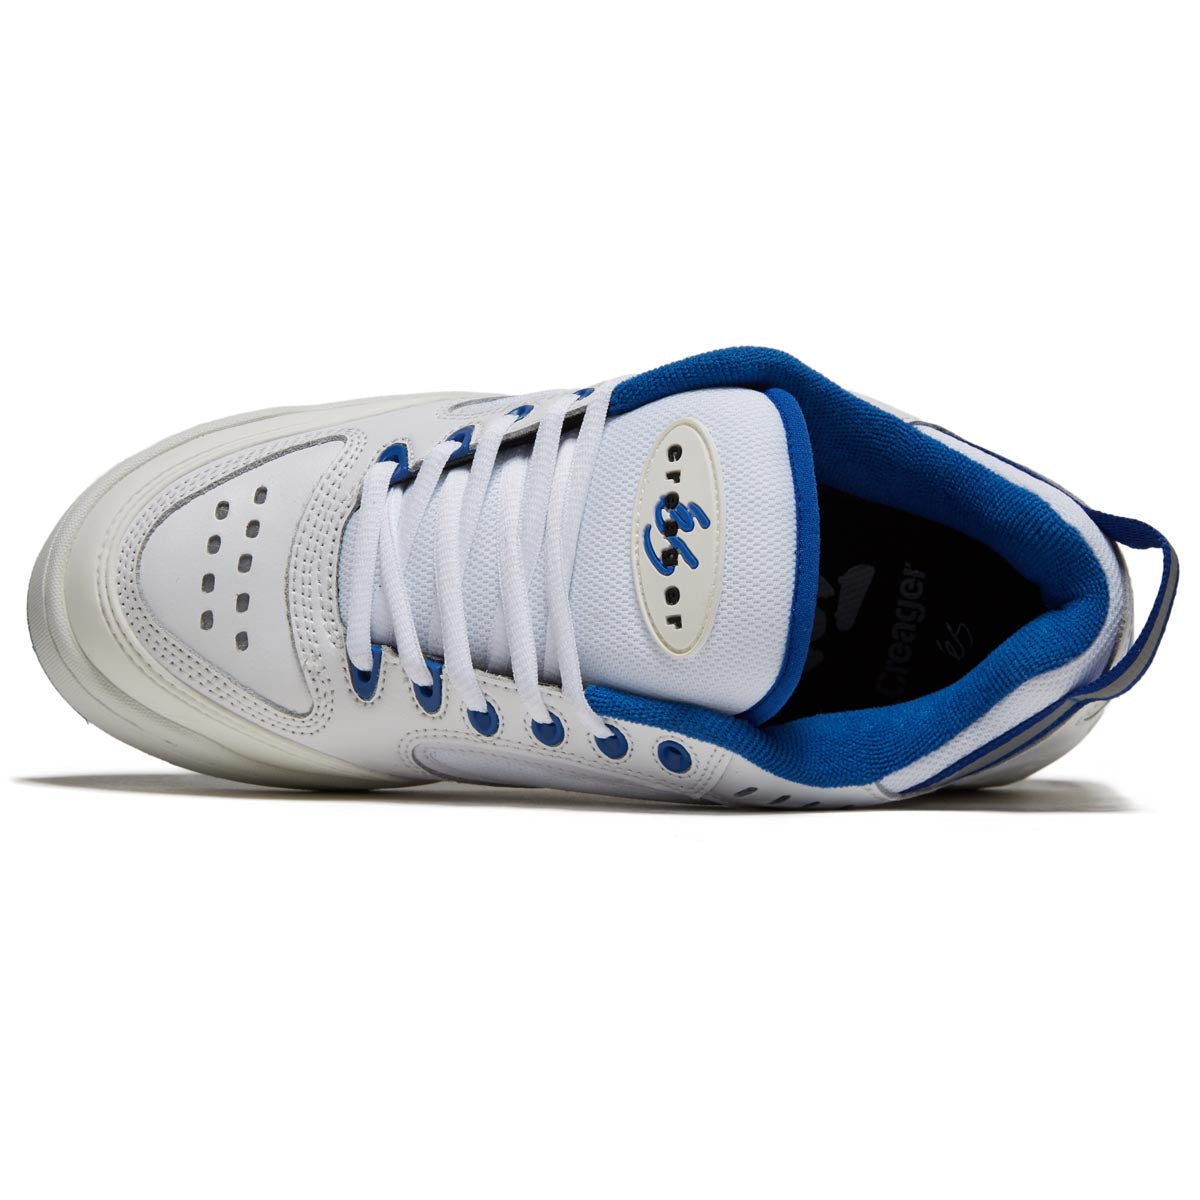 eS Creager Shoes - White/Blue image 3